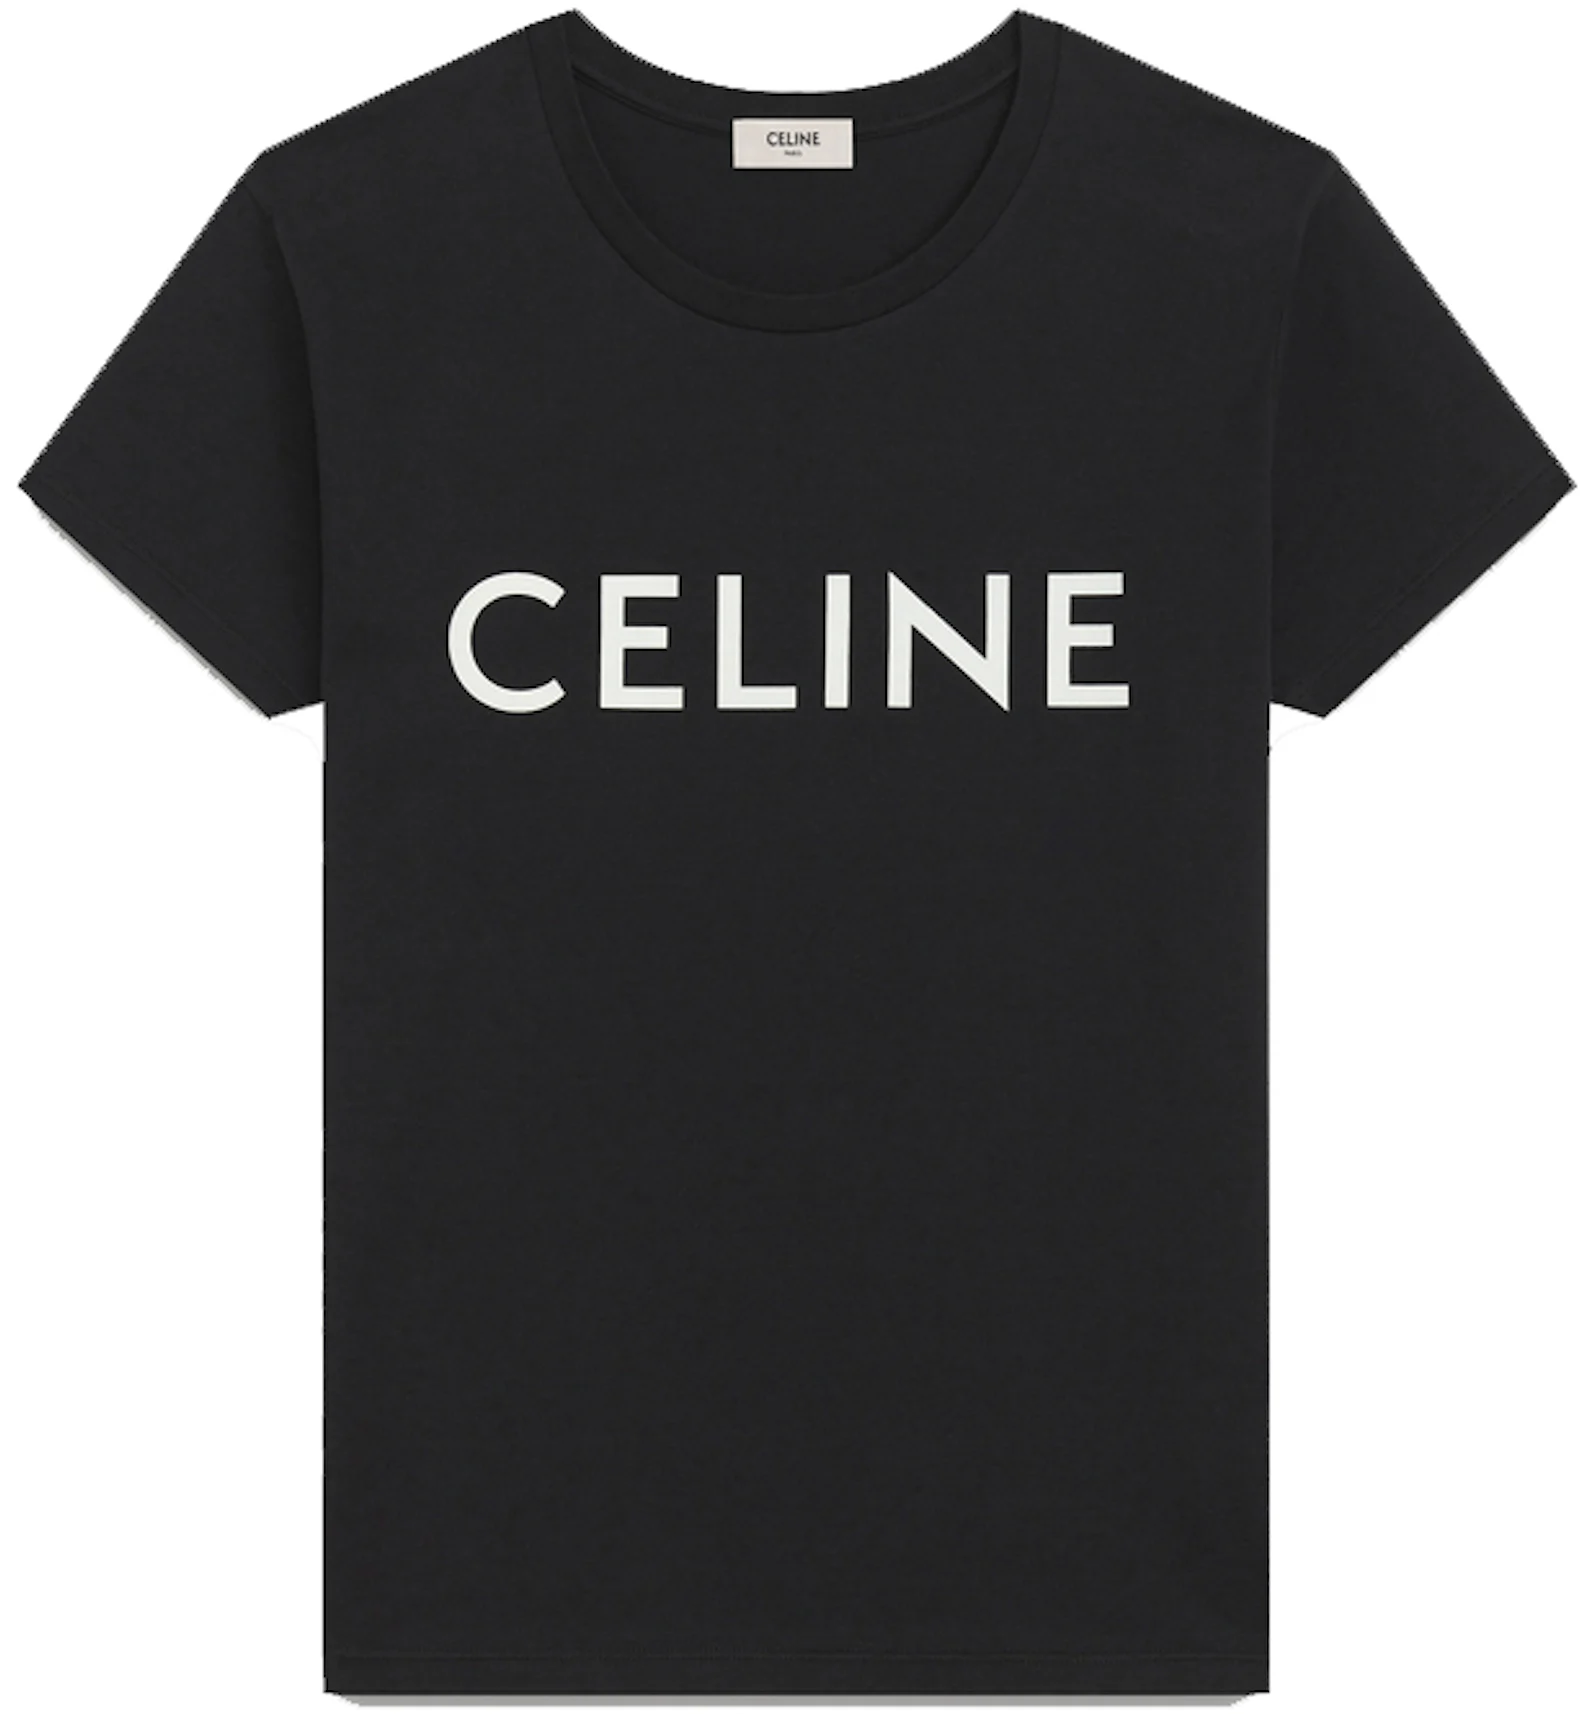 https://images.stockx.com/images/Celine-Cotton-T-Shirt-Black-White.jpg?fit=fill&bg=FFFFFF&w=1200&h=857&fm=webp&auto=compress&dpr=2&trim=color&updated_at=1616049282&q=60